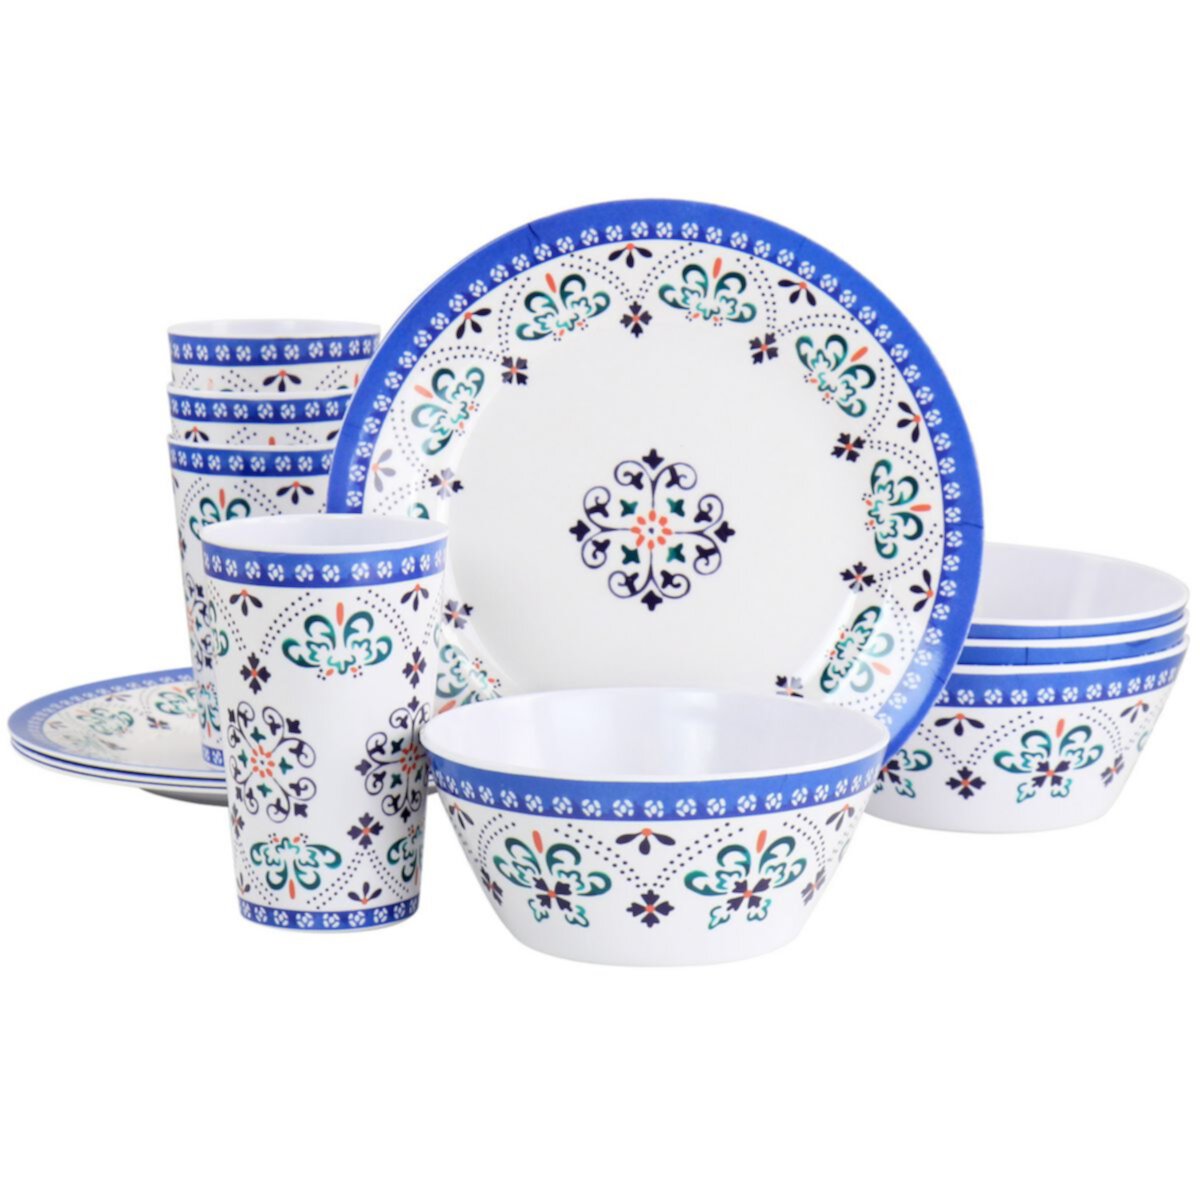 Набор столовой посуды Gibson Everyday Alhambra Blues из 12 предметов с меламином синего и белого цвета Gibson Everyday